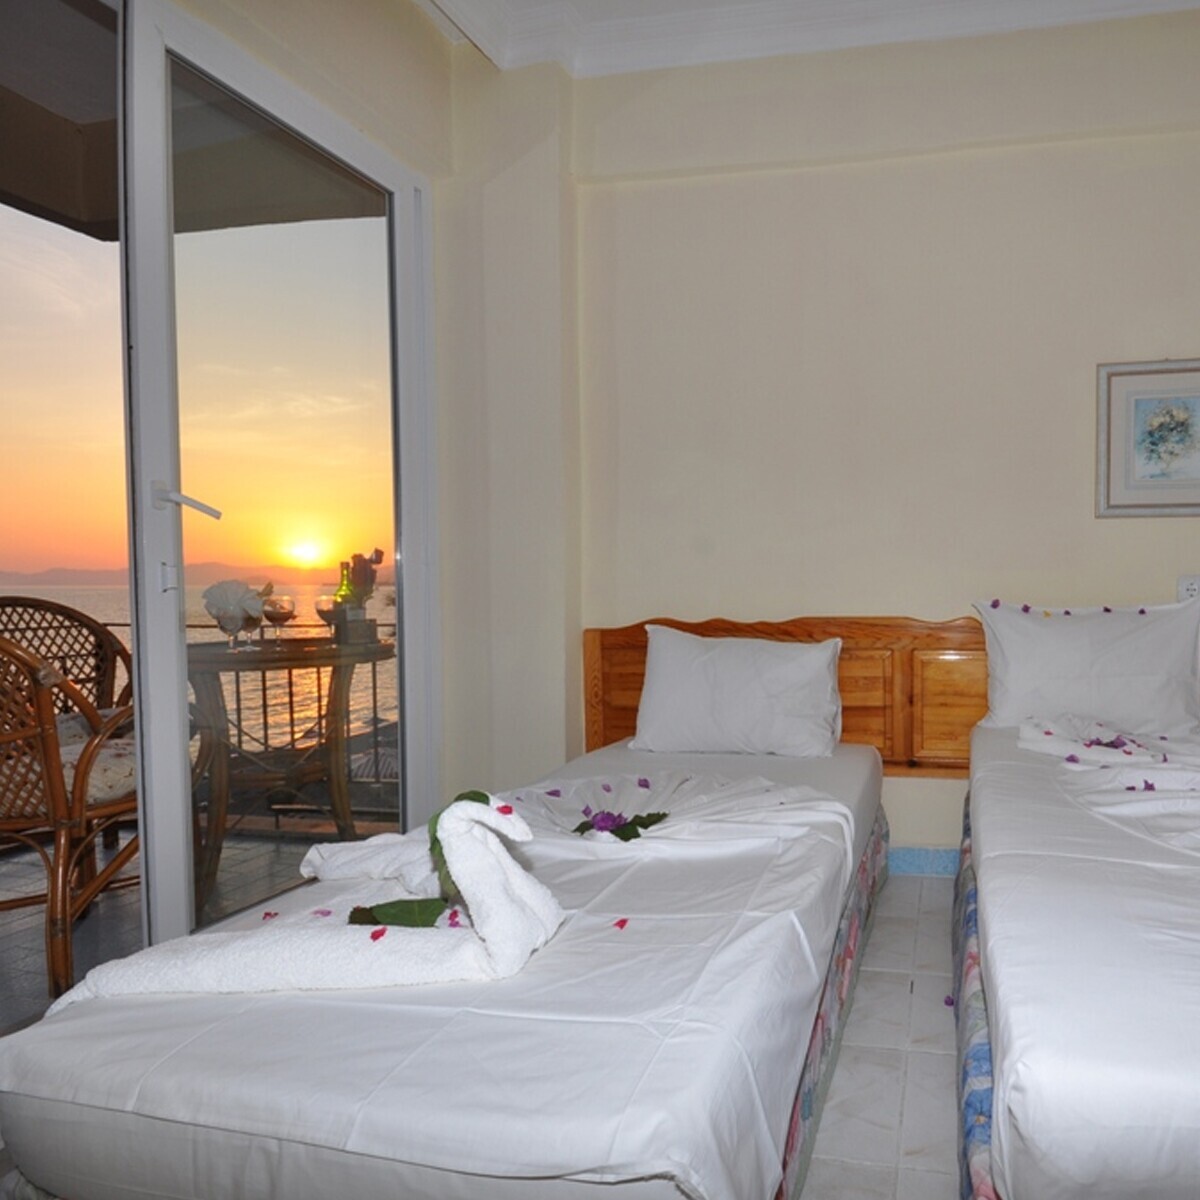 Fethiye Deniz Otel'de Çift Kişilik Konaklama Seçenekleri